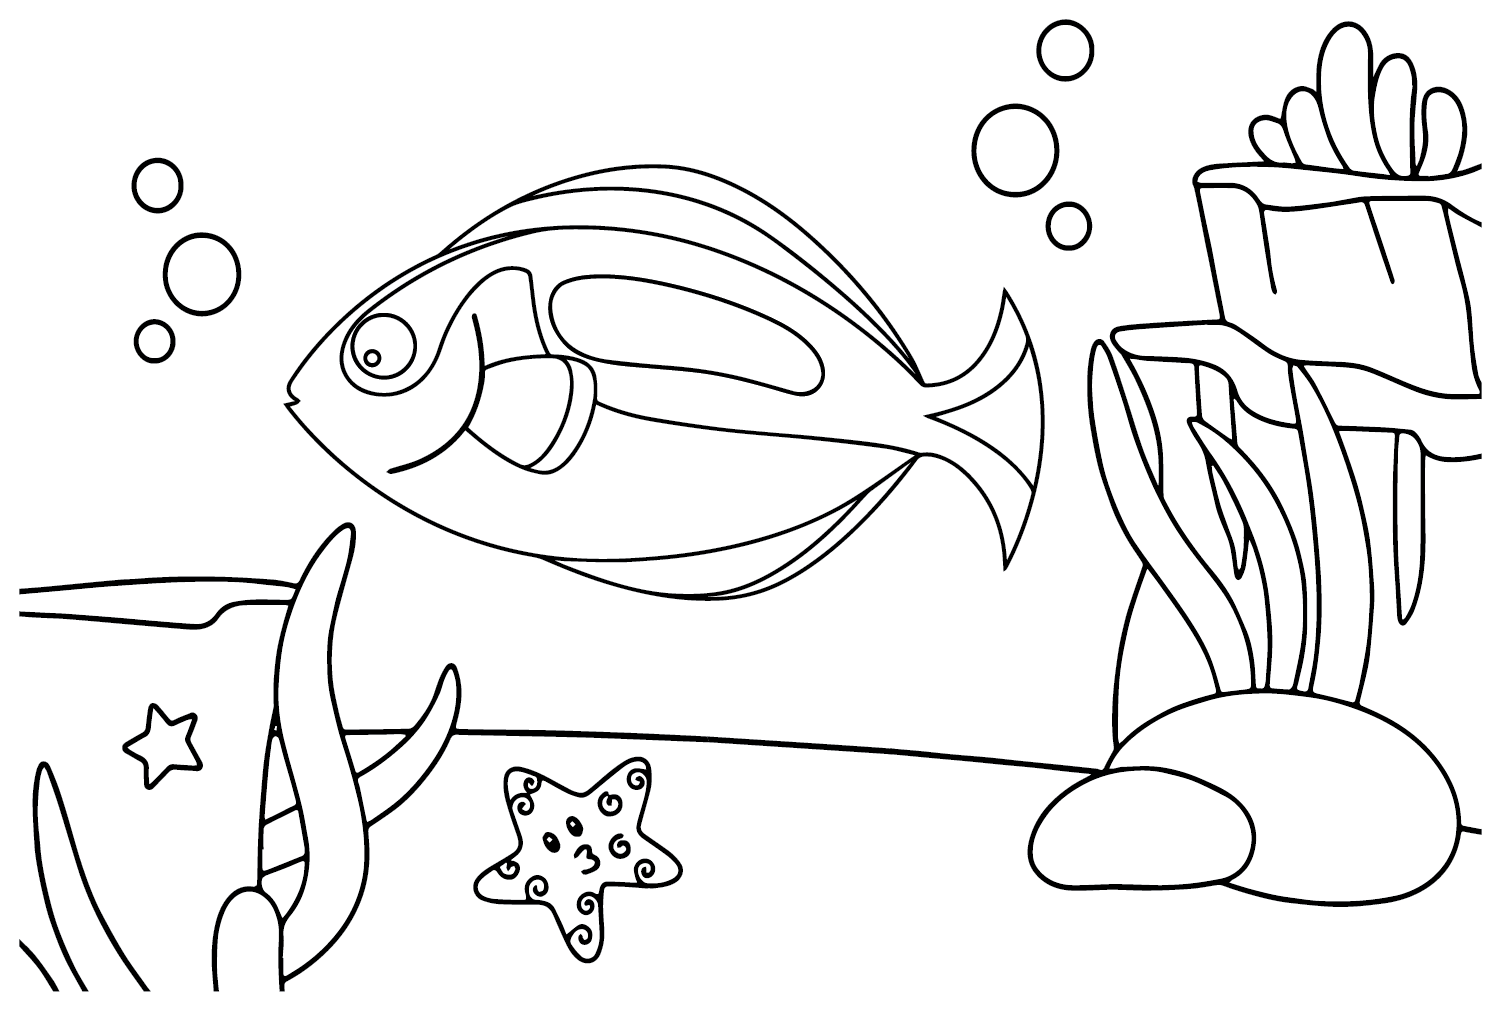 رسم سمكة تانغ من سمكة تانغ